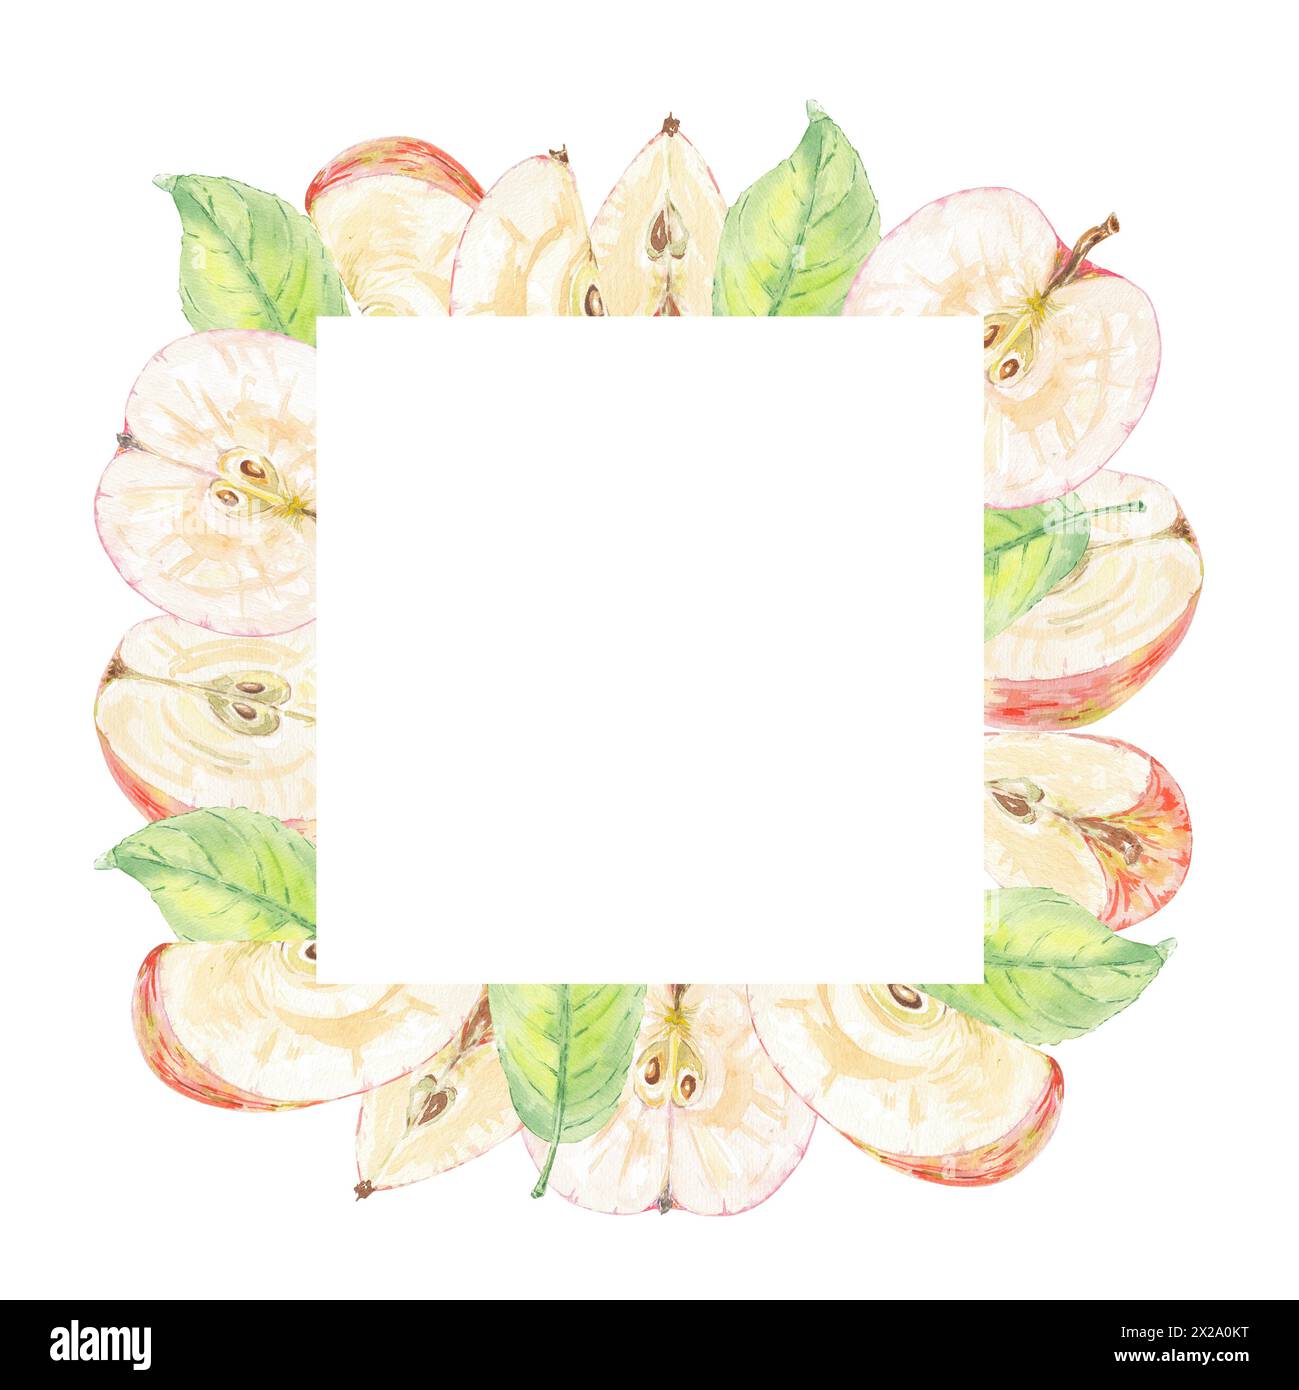 Apfelrot geschnitten und Blätter grün Aquarellrahmen Postkarte isolierte Illustration auf weißem Hintergrund. Herbstfrucht für Logo, Menü, Karte. Kunstdesign Stockfoto